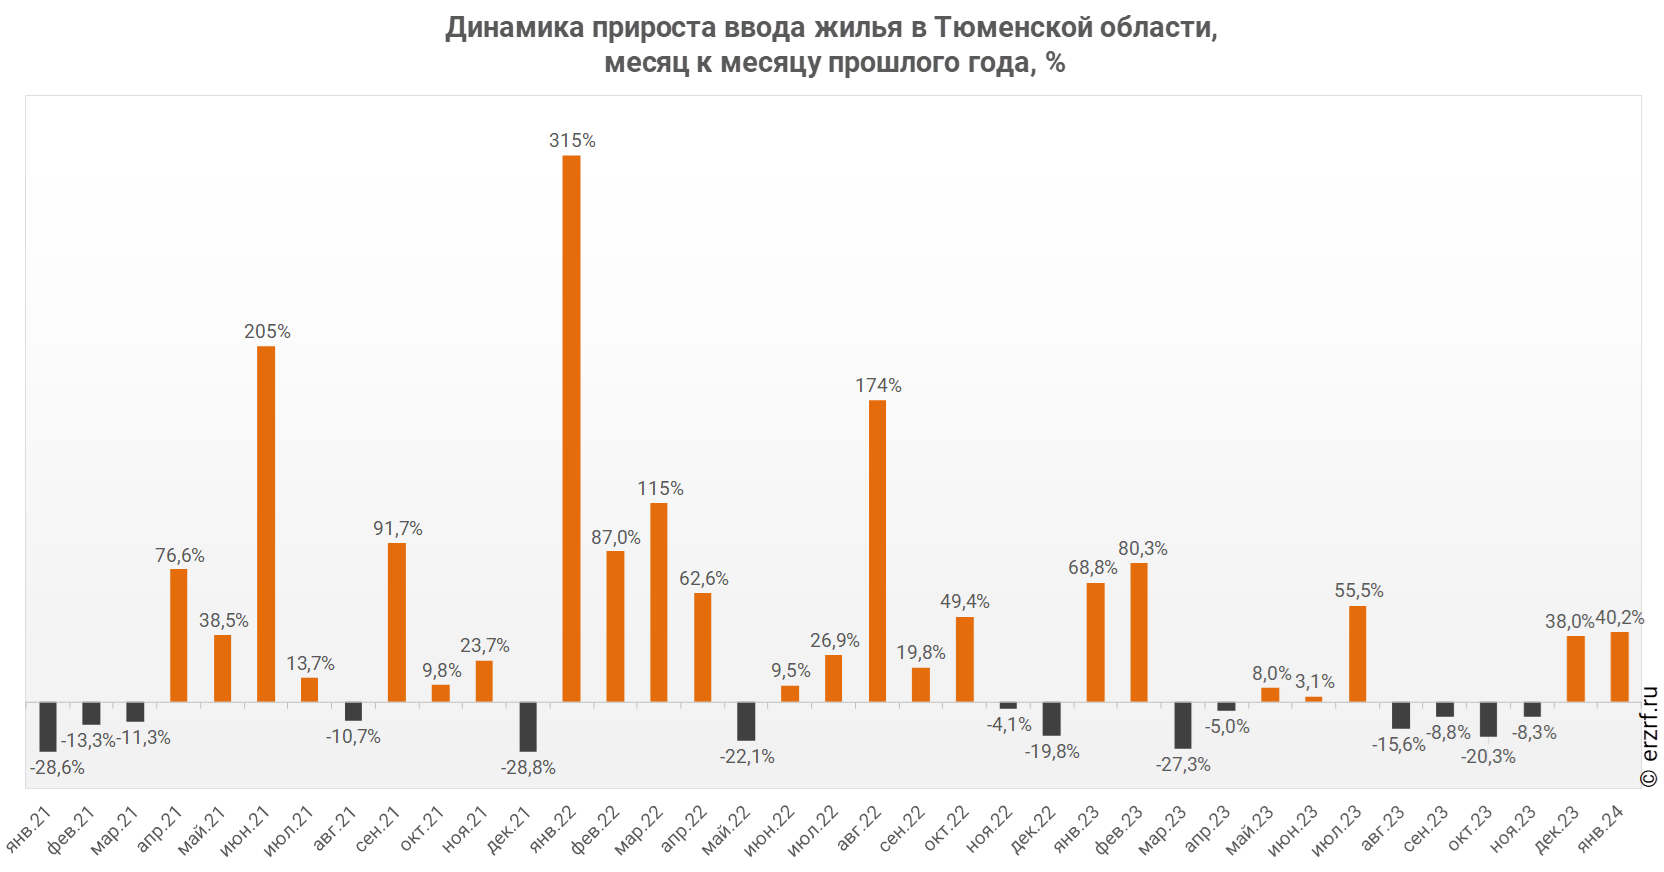 Динамика прироста ввода жилья в Тюменской области,
 месяц к месяцу прошлого года, %